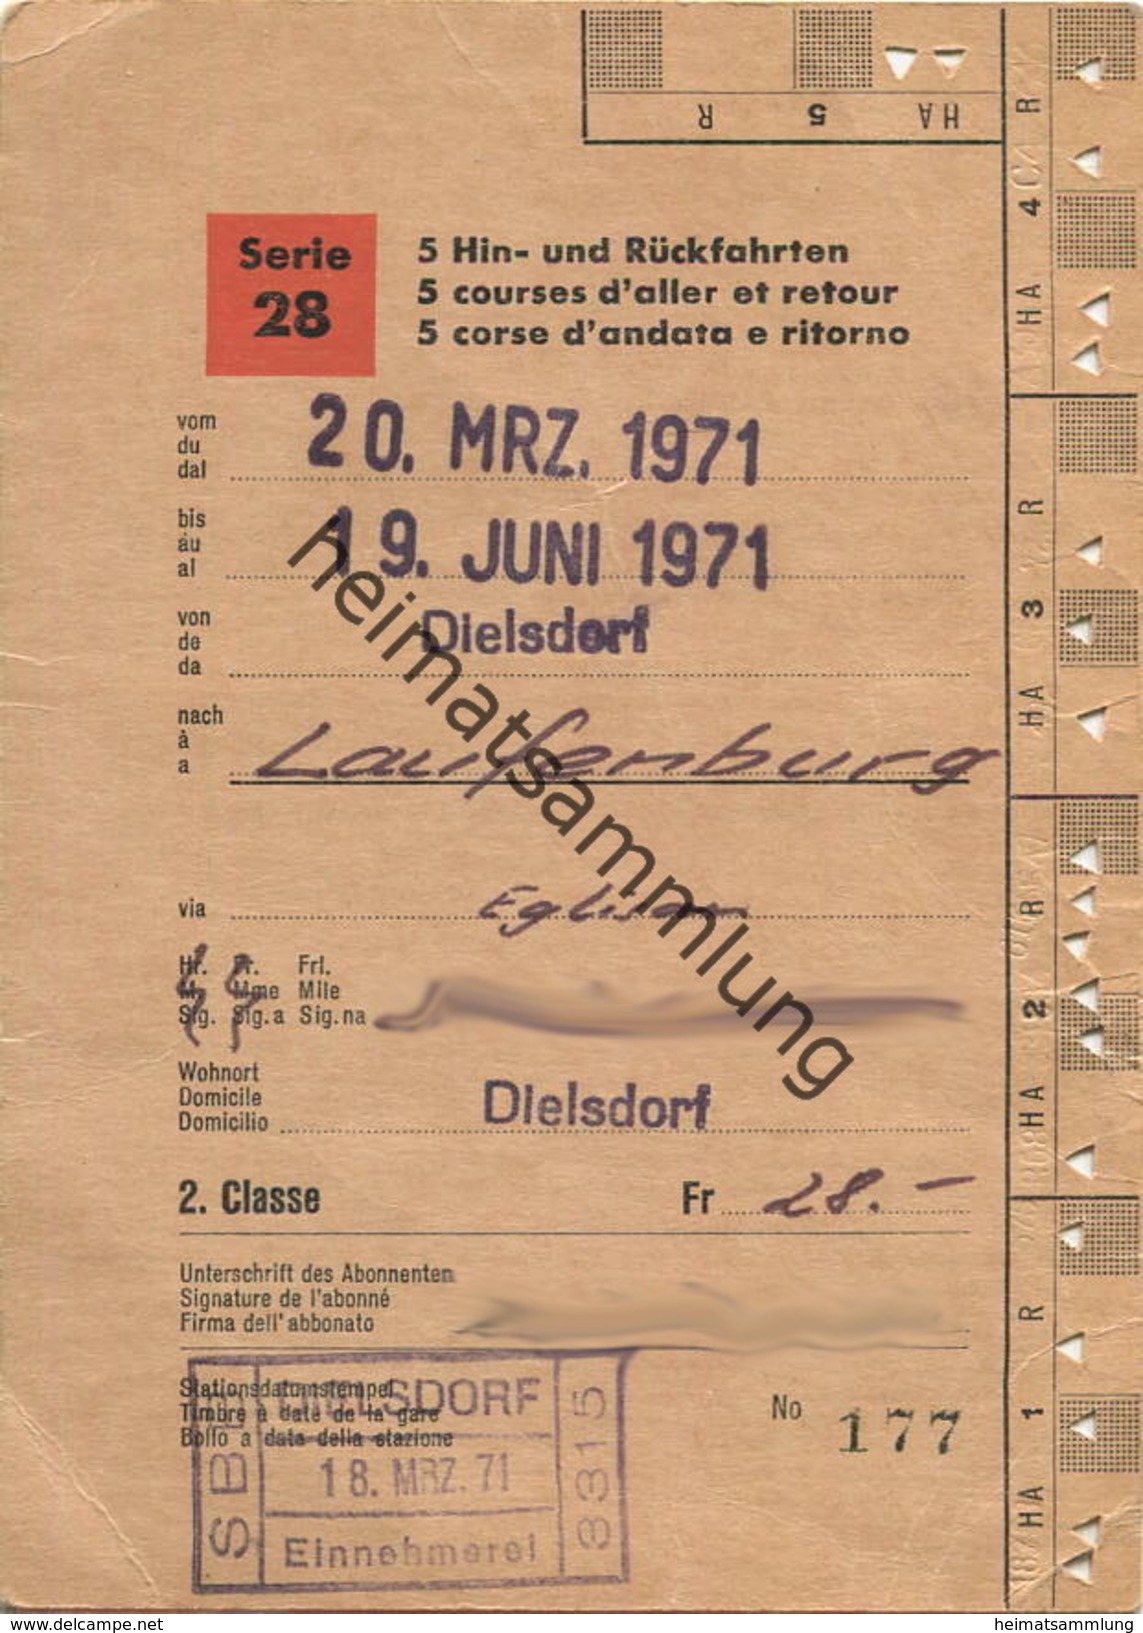 Schweiz - SBB - Schüler- Und Lehrlingsabonnement Serie 28 5 Hin- Und Rückfahrten - Dielstorf Laufenburg 1971 - Europa